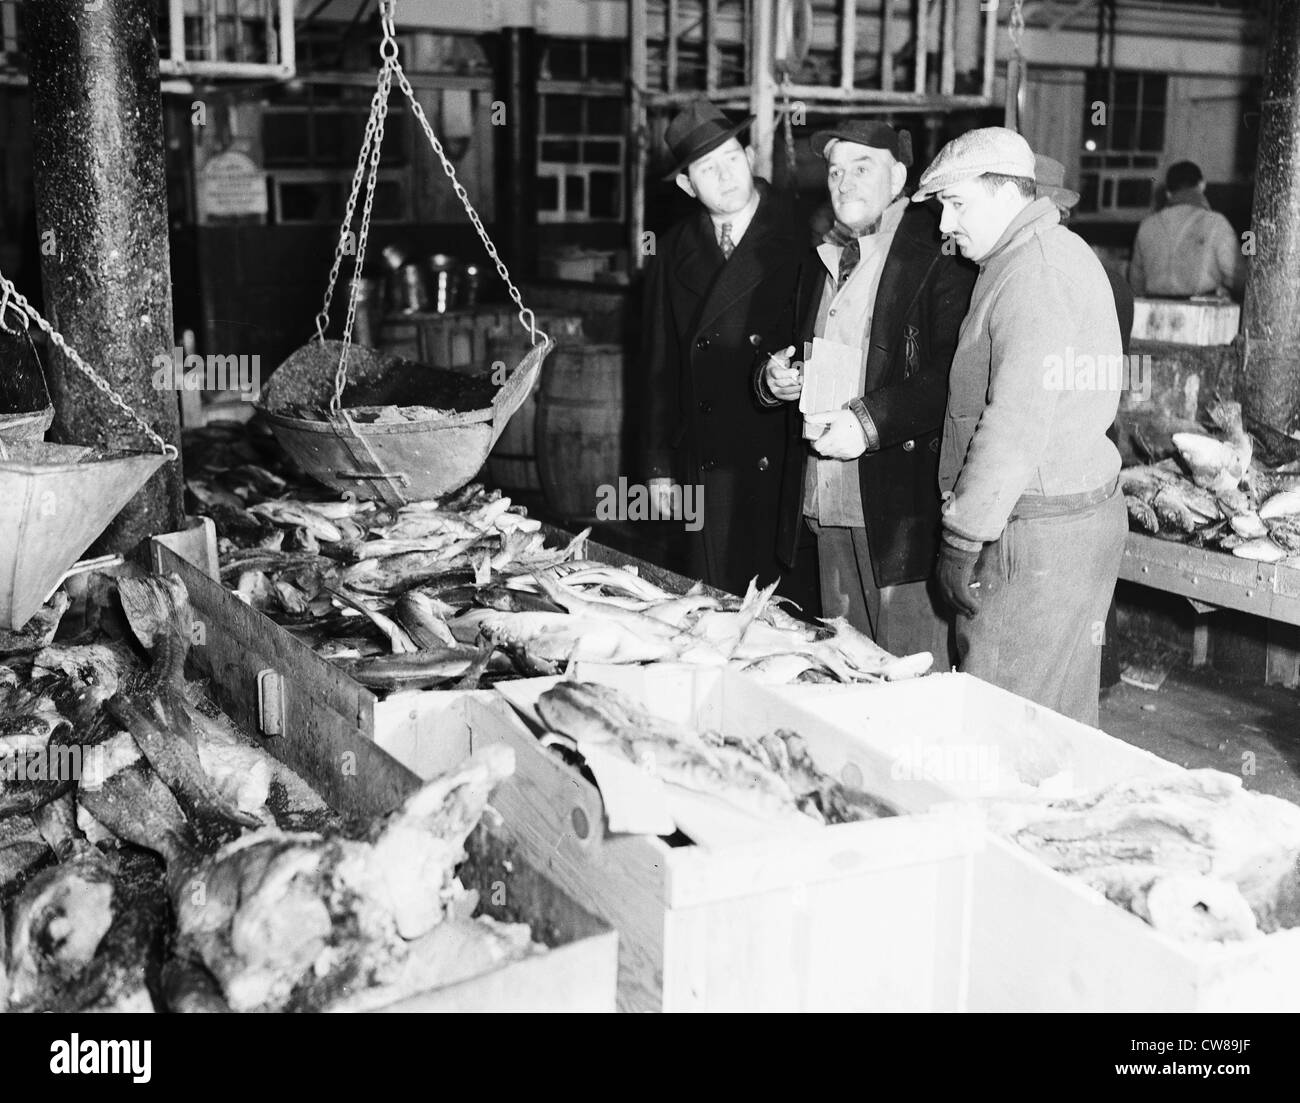 Fulton Fish Market, New York City, early morning, February 17, 1943 Stock Photo